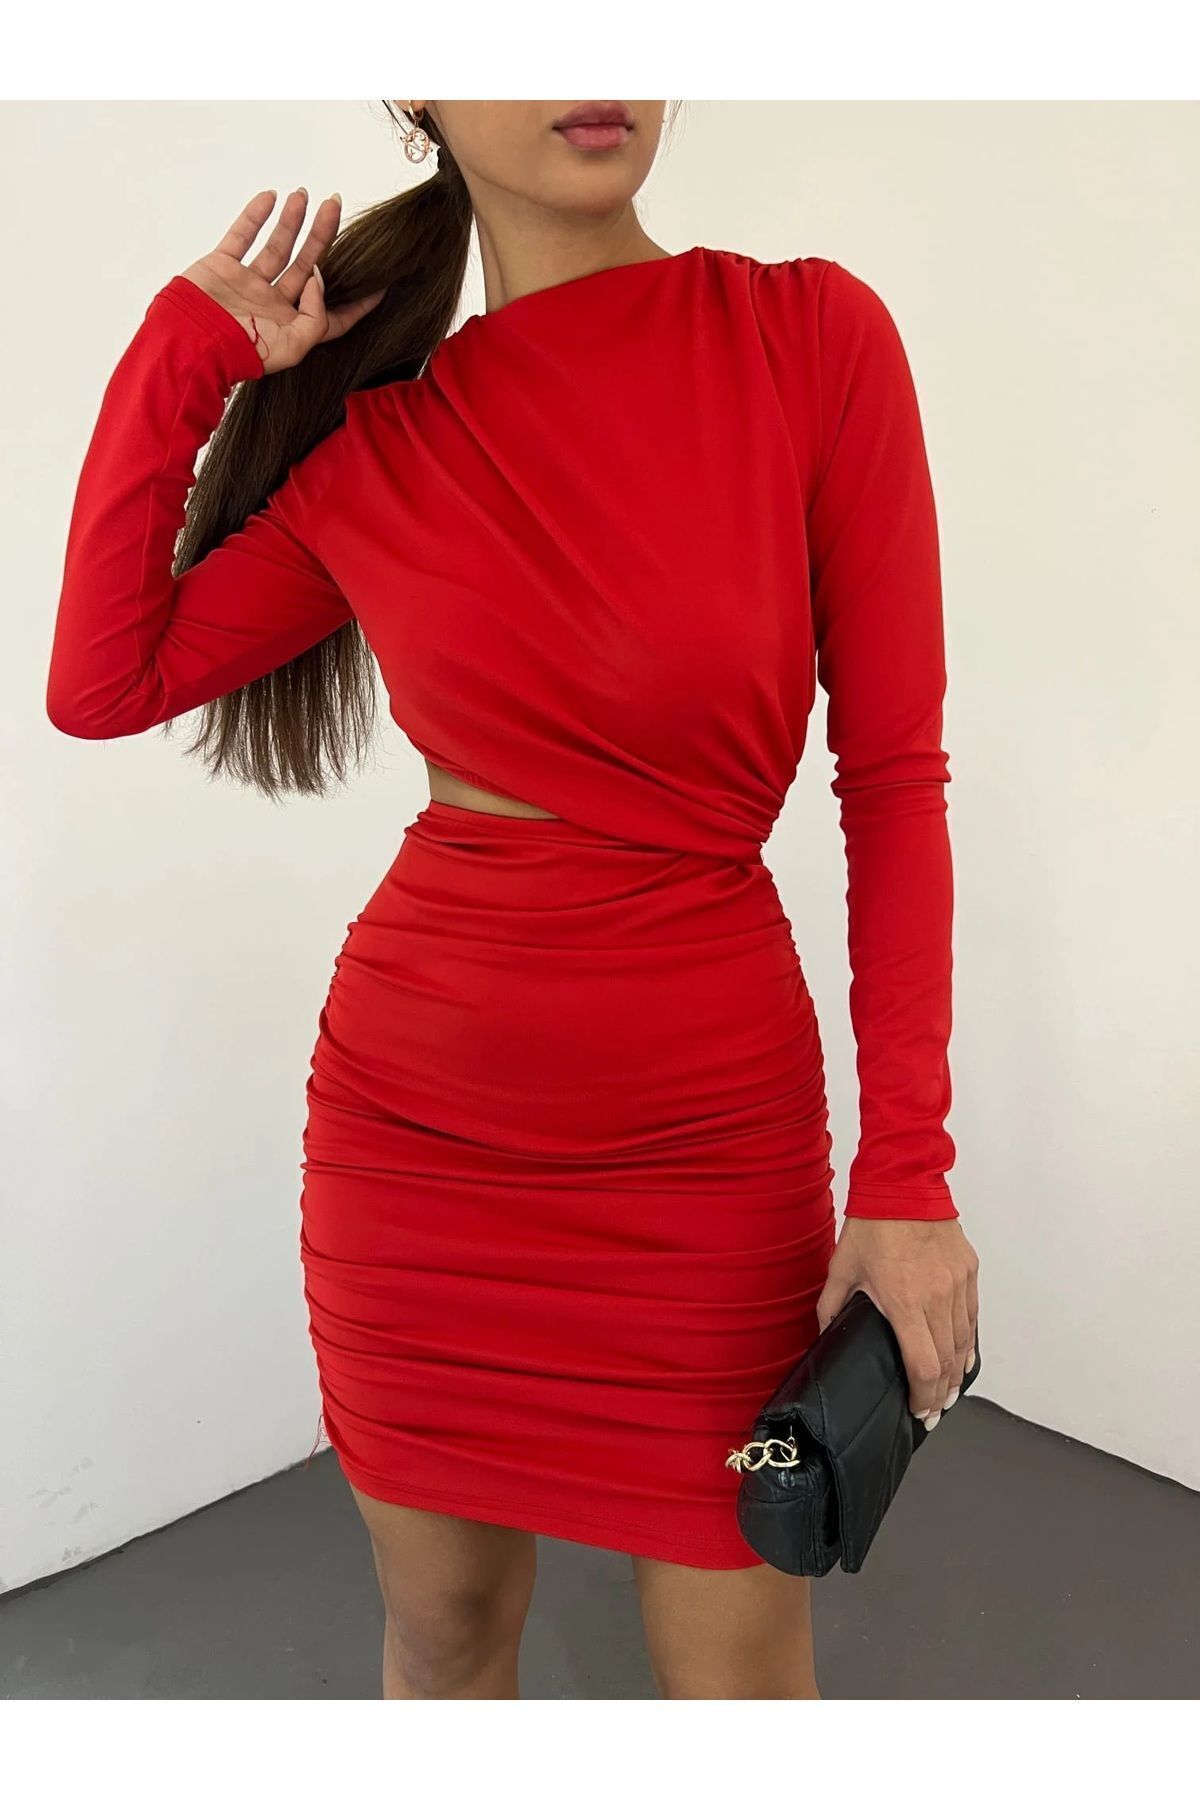 Elora Bel Detaylı Kırmızı Elbise